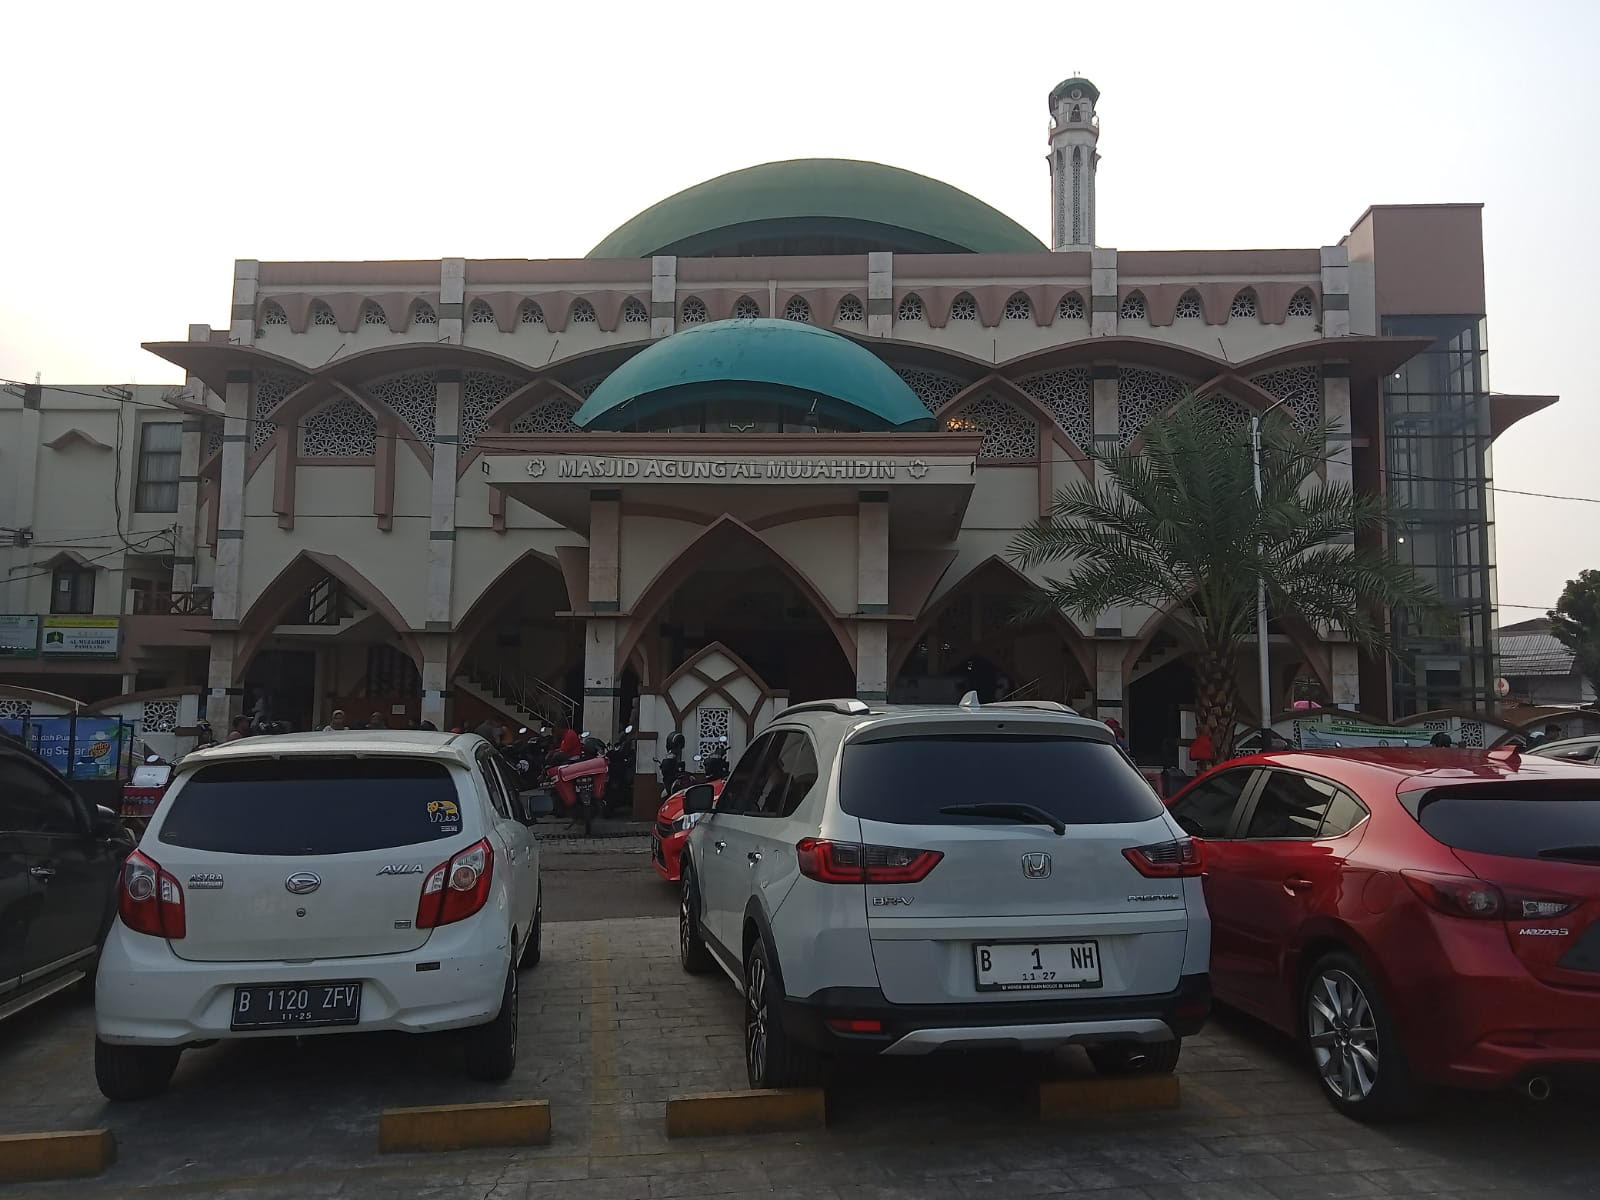 Mengenal Masjid Agung Al Mujahidin Pamulang, Arsitektur Bergaya Timur Tengah Dikemas Secara Modern